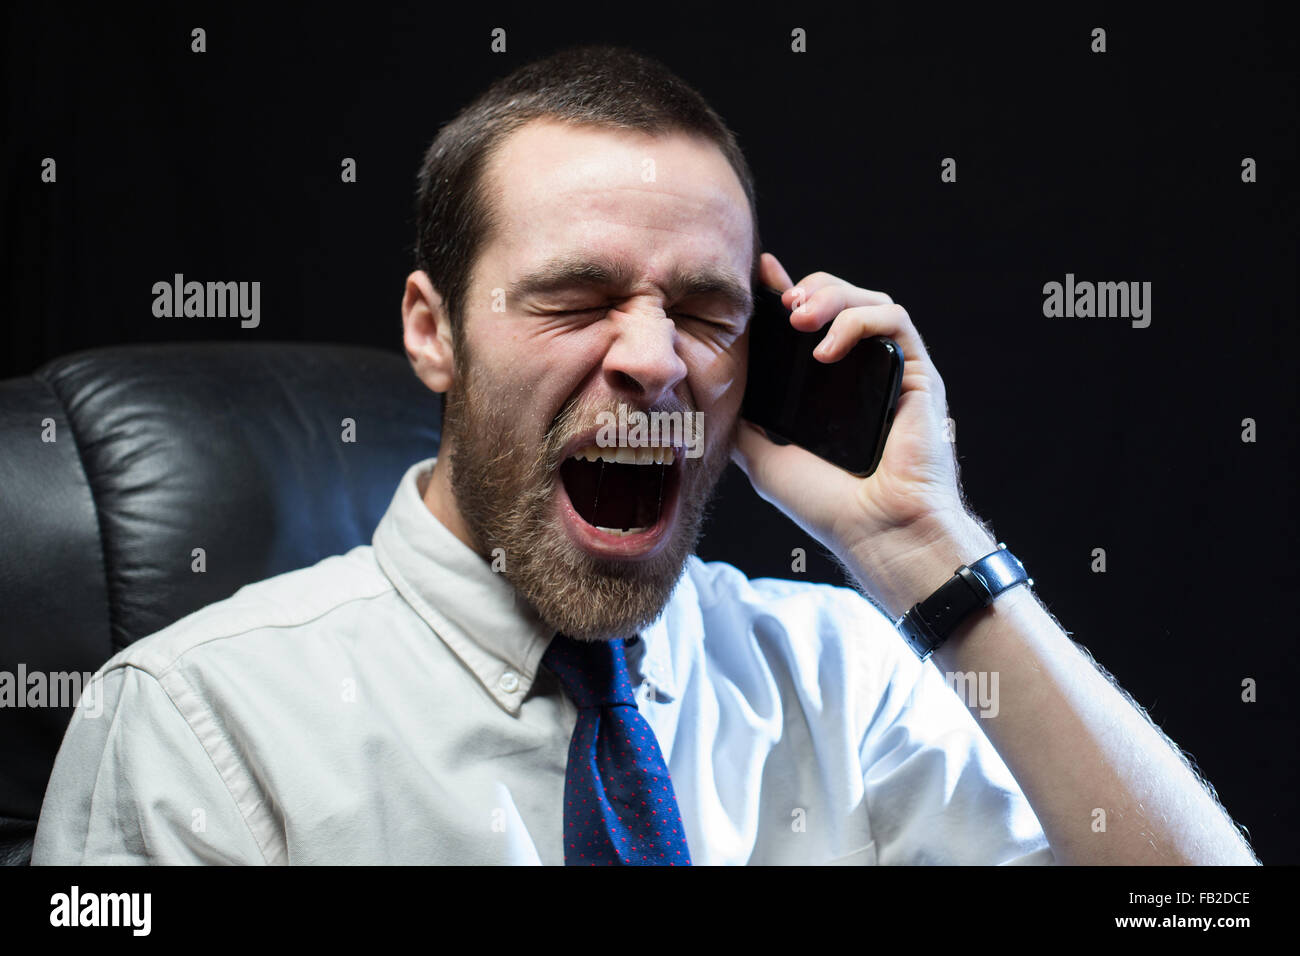 Ein Büroangestellter, trug ein Hemd und Krawatte, schreit nach unten ein Mobiltelefon im Zorn. Stockfoto